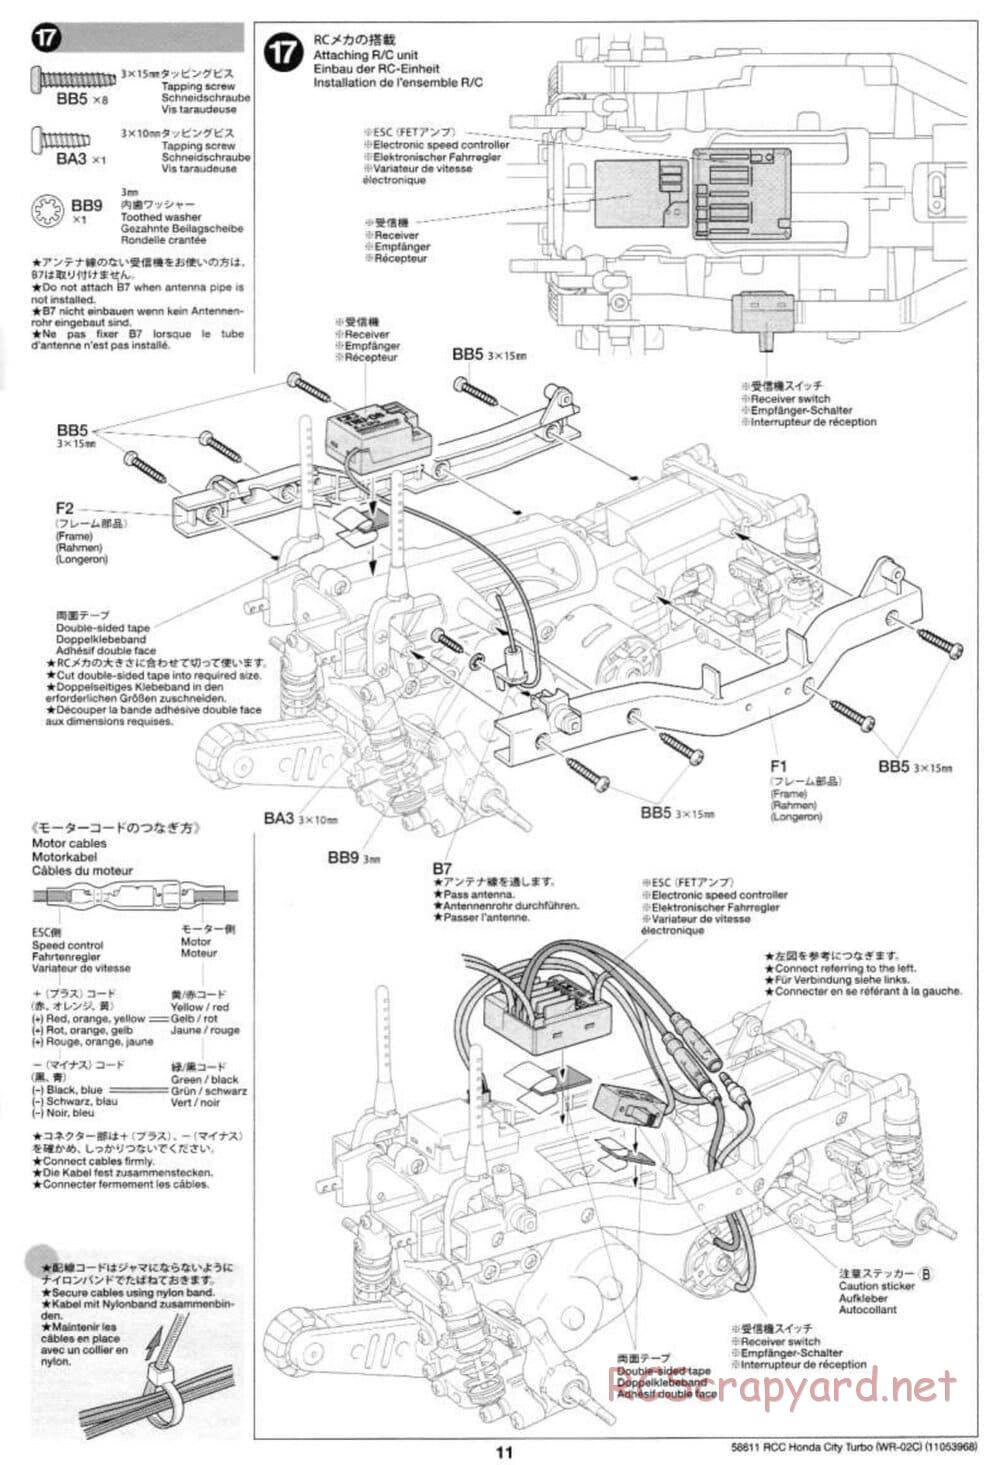 Tamiya - Honda City Turbo - WR-02C Chassis - Manual - Page 11